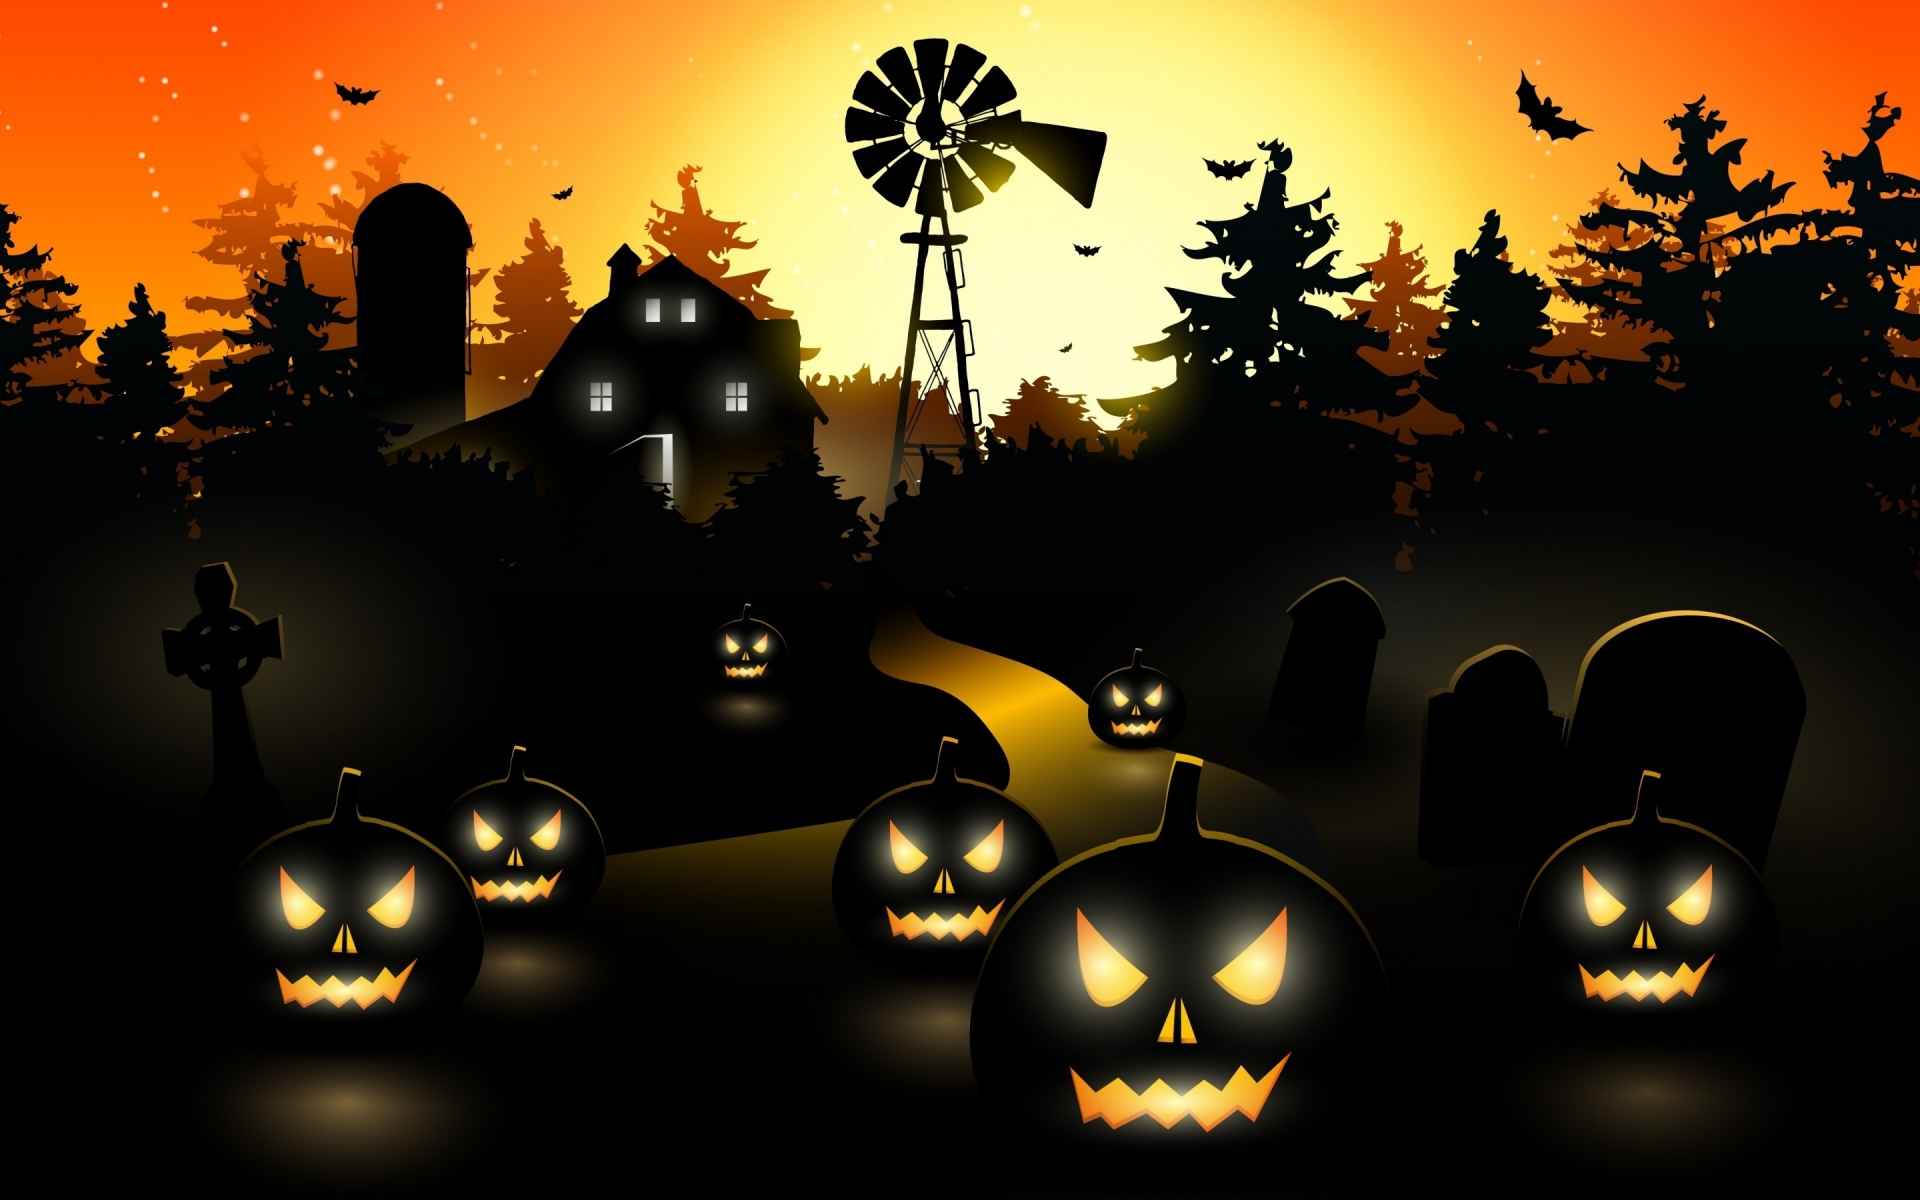 Halloween Black Pumpkins for 1920 x 1200 widescreen resolution